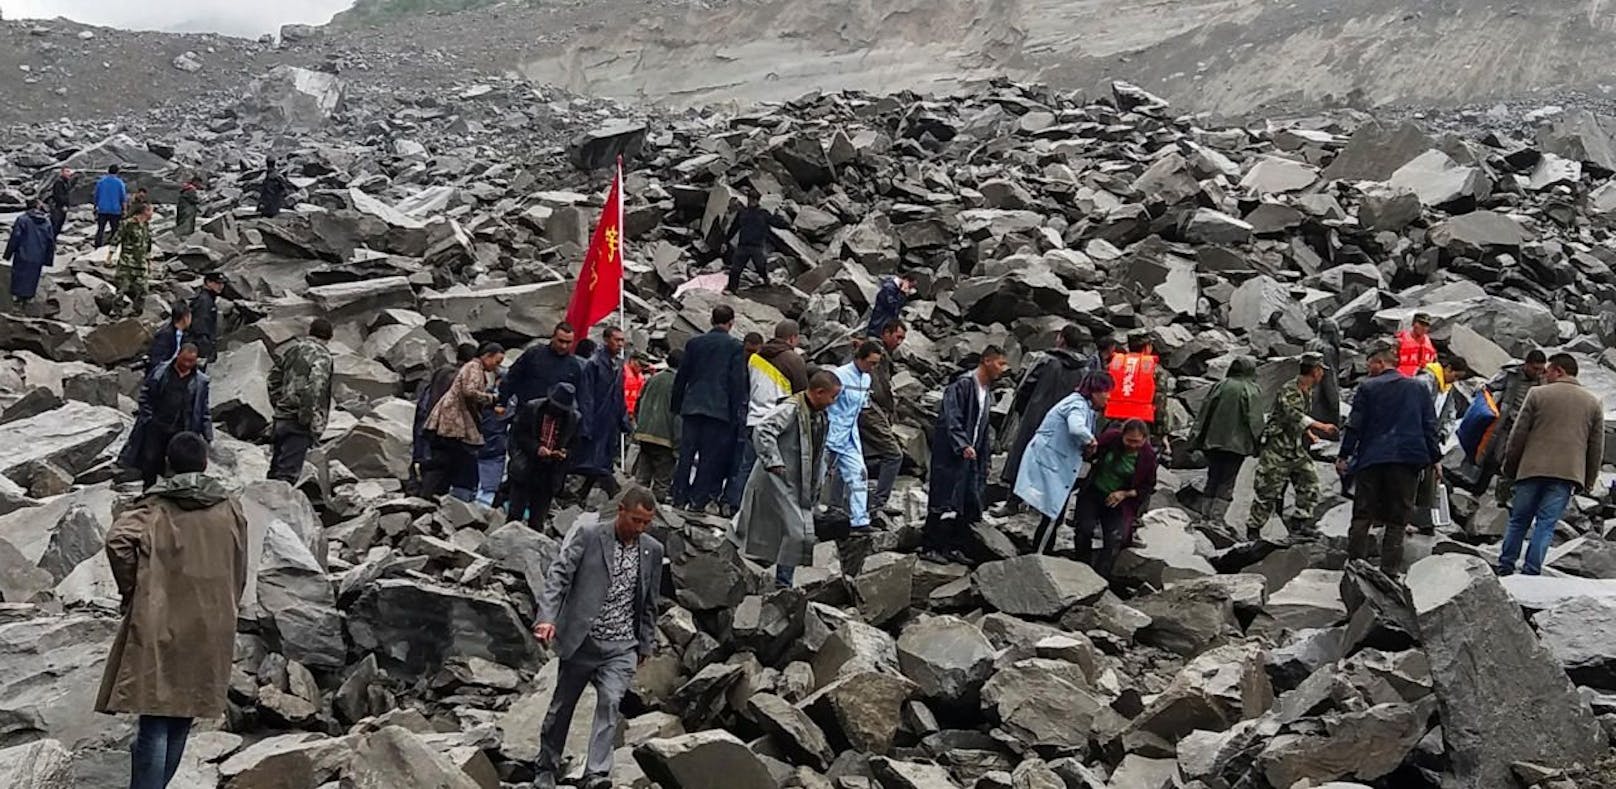 Über 140 Menschen in China verschüttet